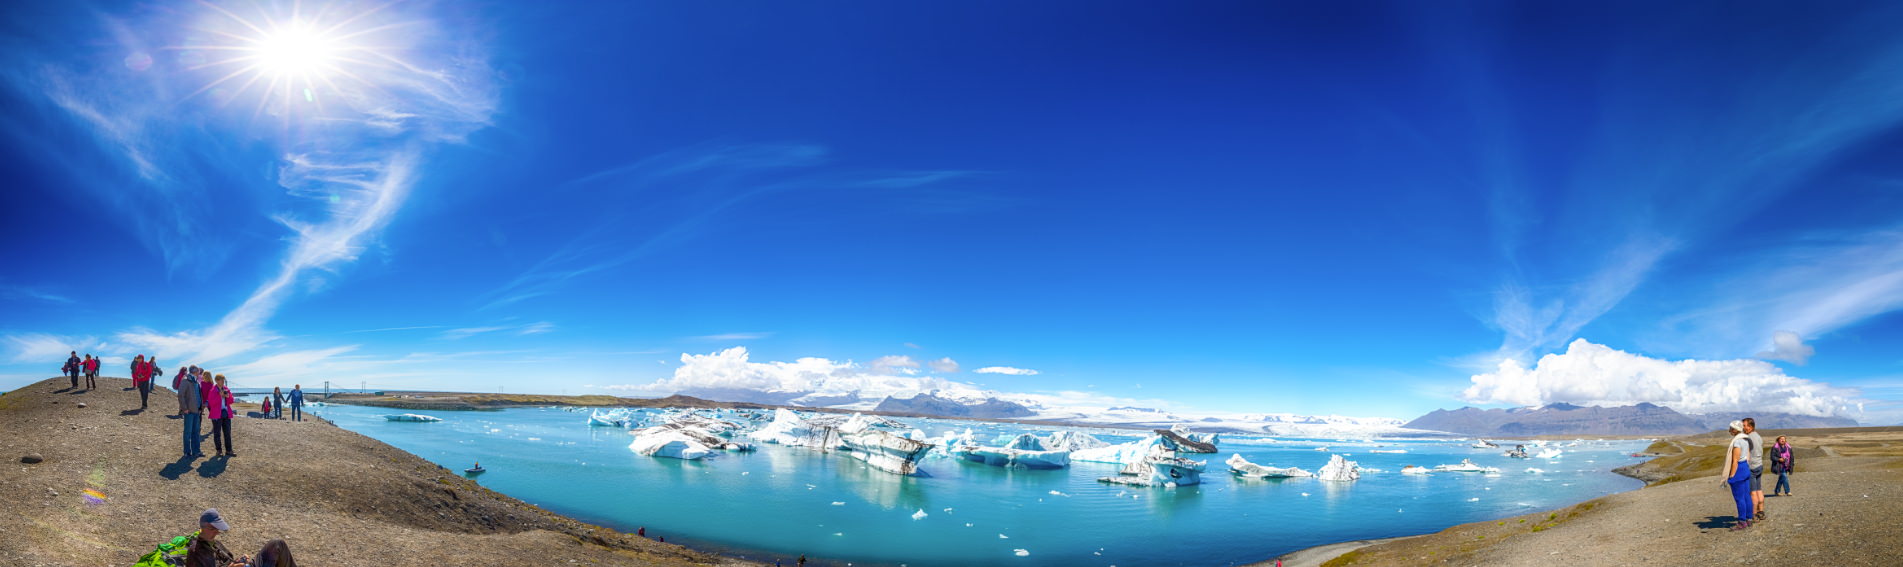 傑古沙龍冰河湖遊船